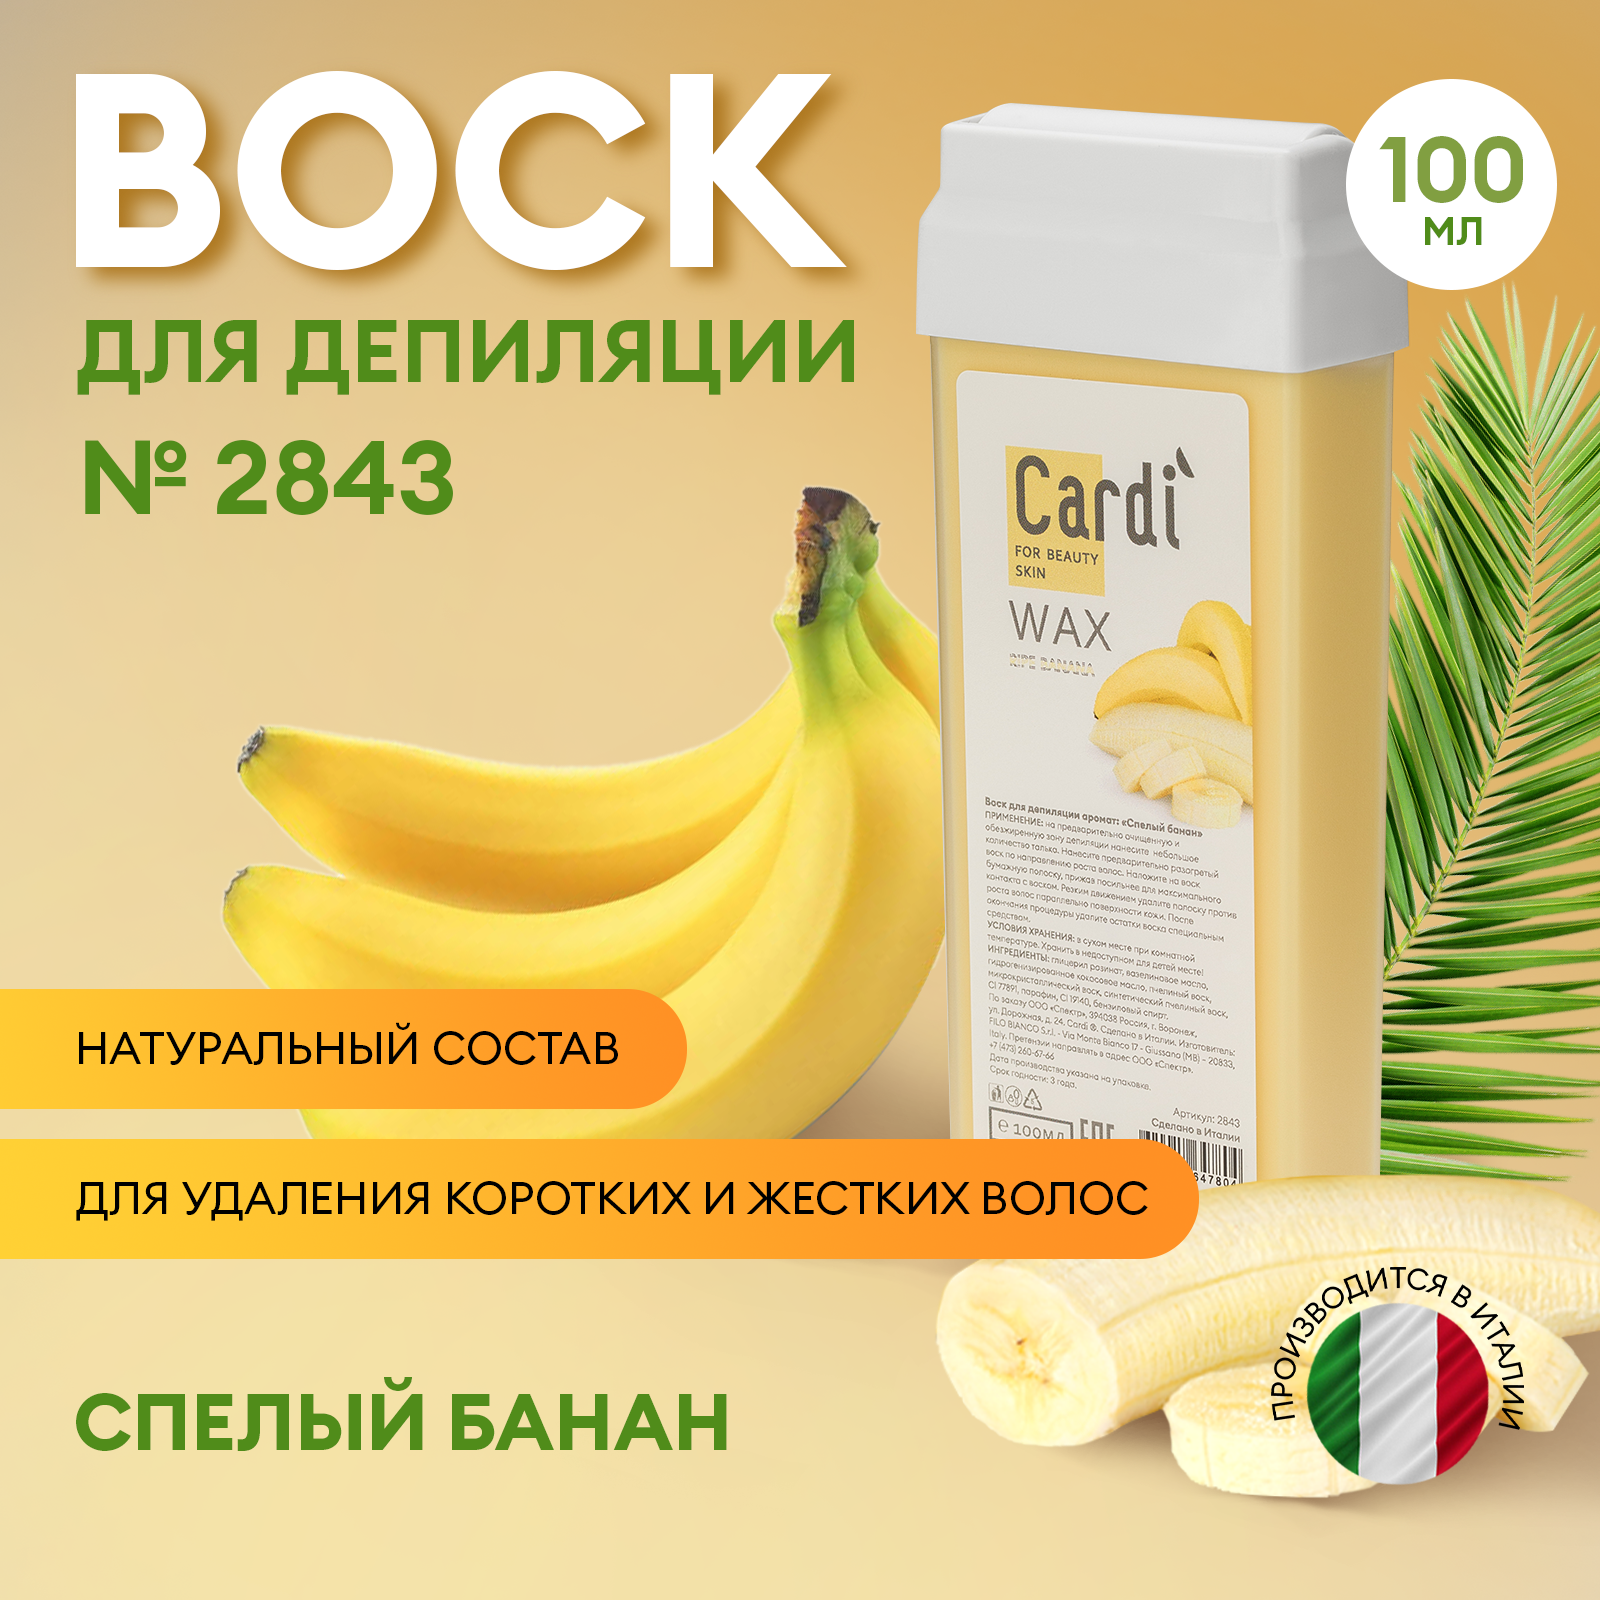 Воск для депиляции Cardi (аромат: Спелый банан), 100 мл